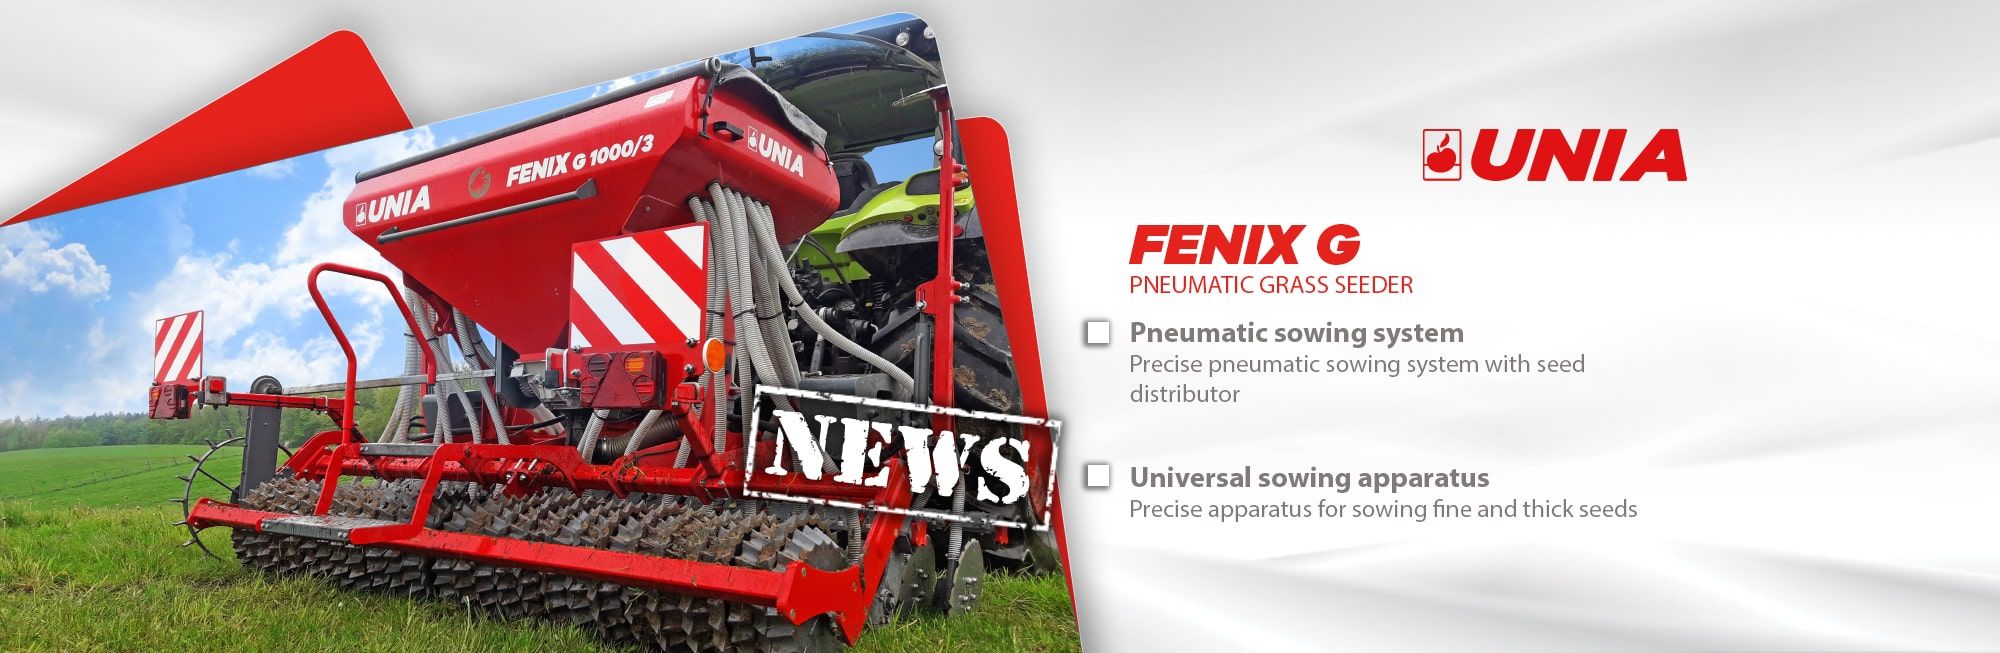 Fenix - pneumatic grass seeder